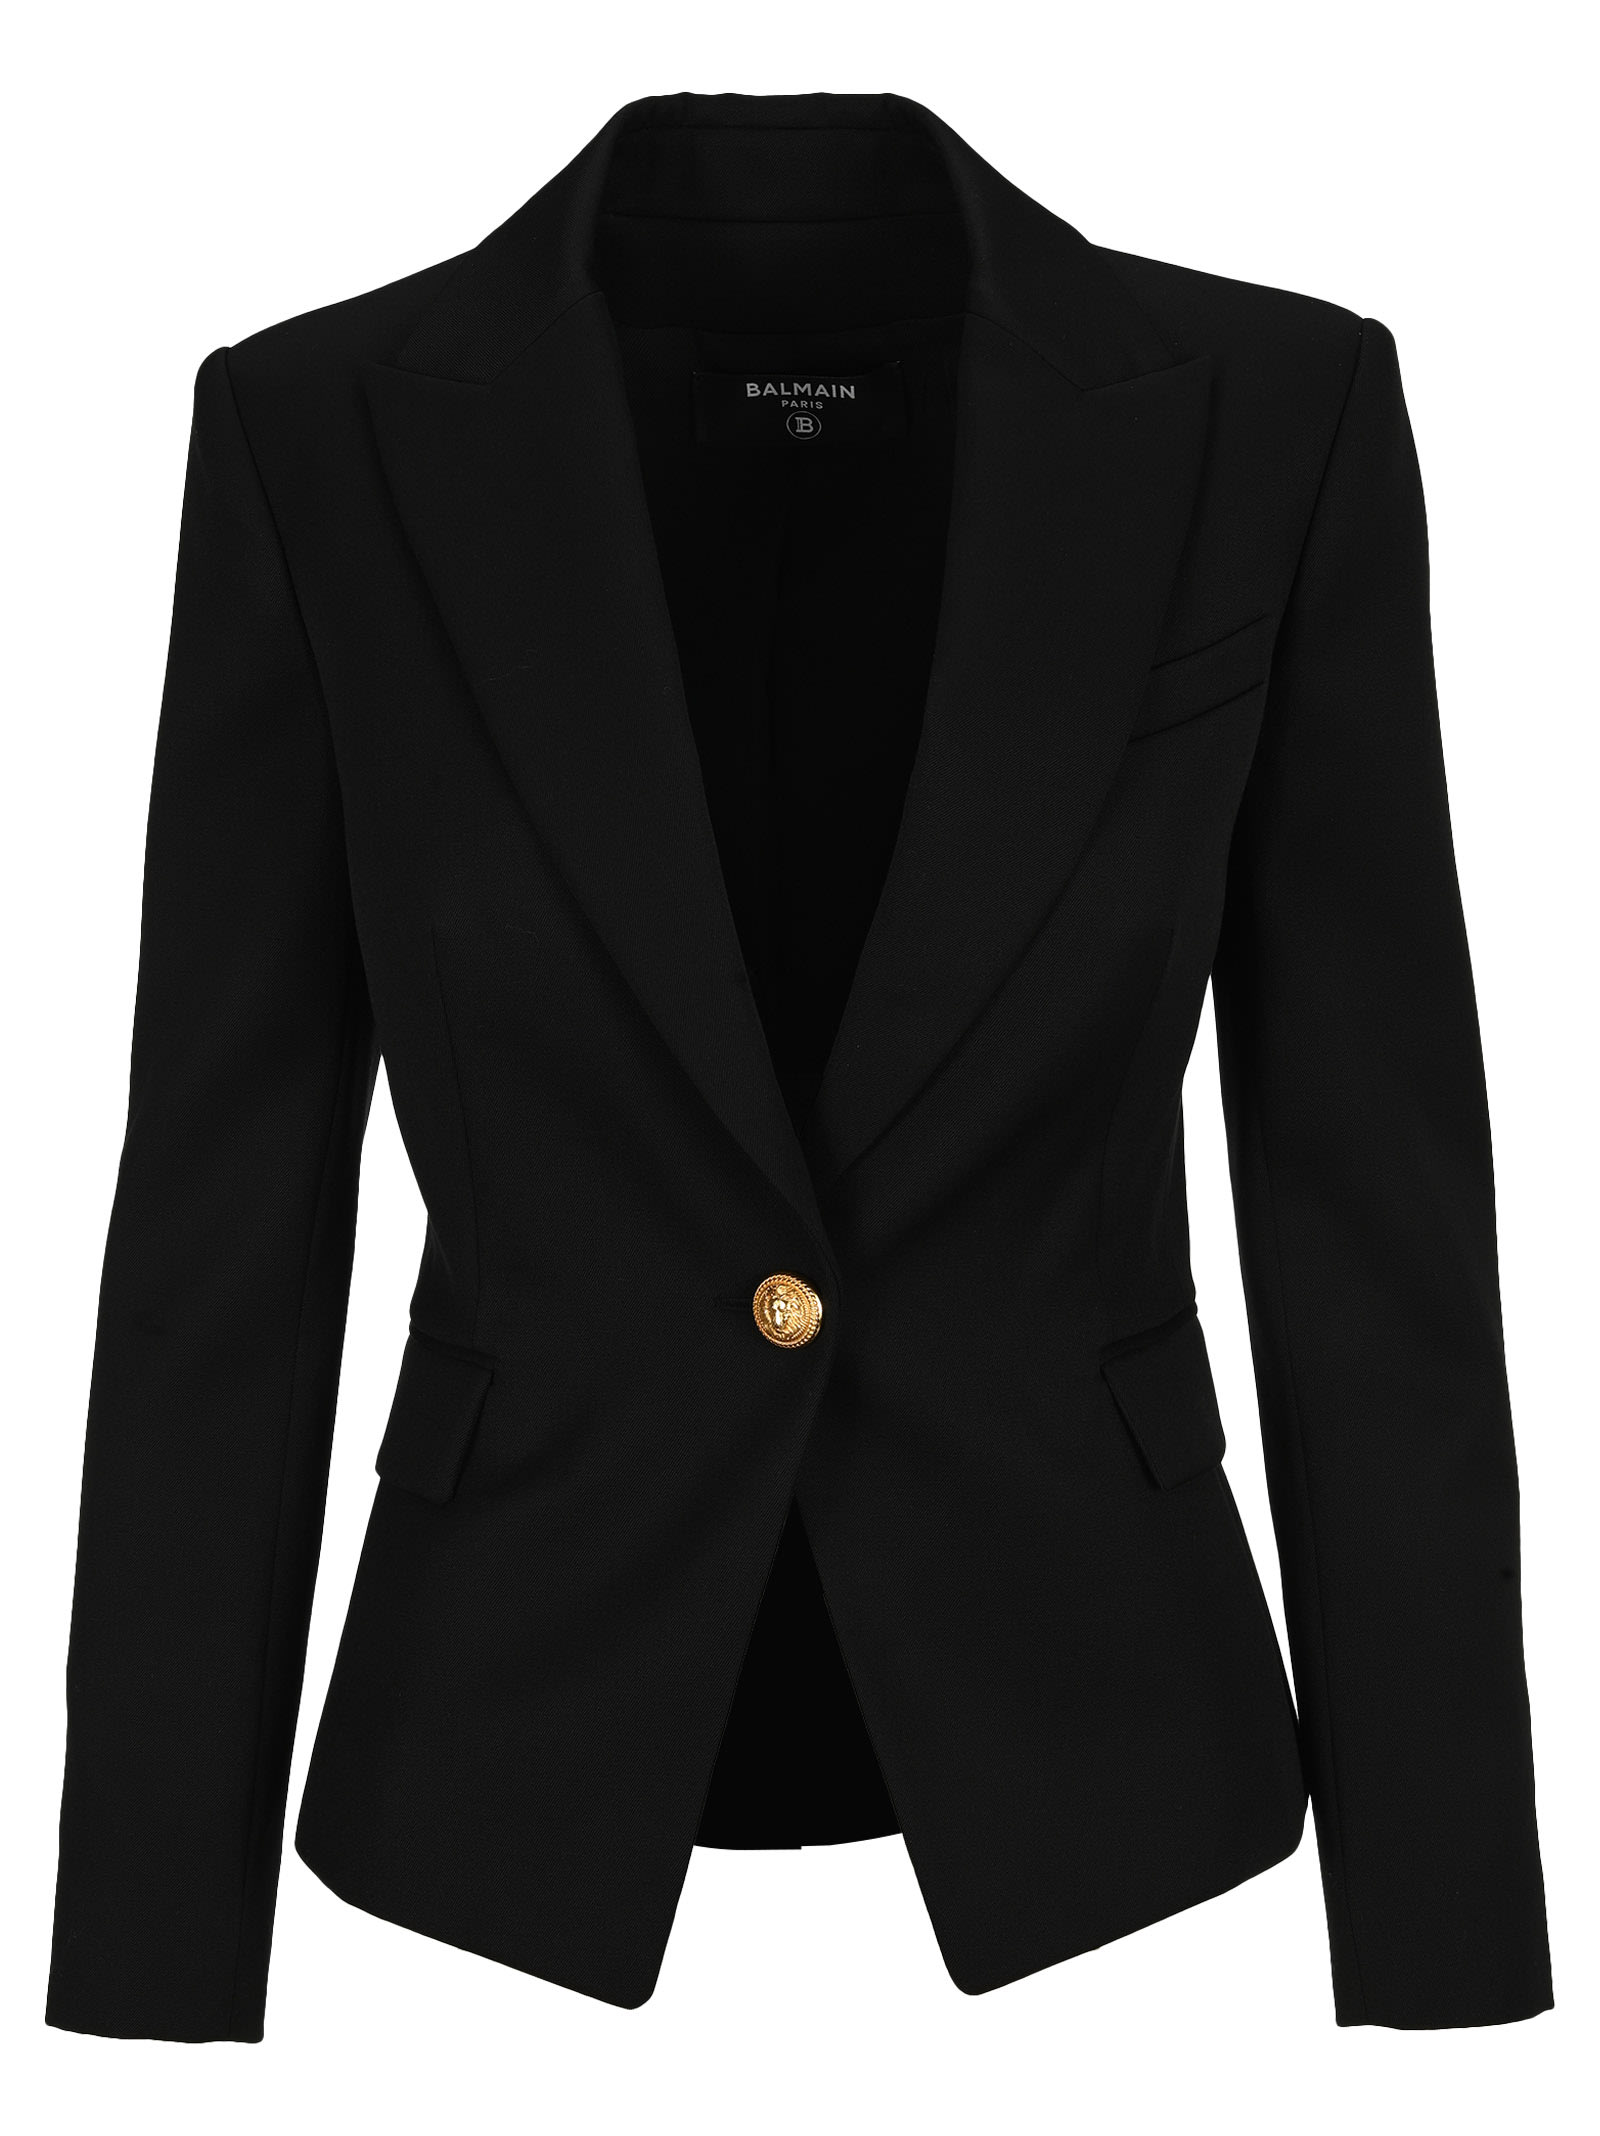 Balmain Black Wool Single-button Blazer